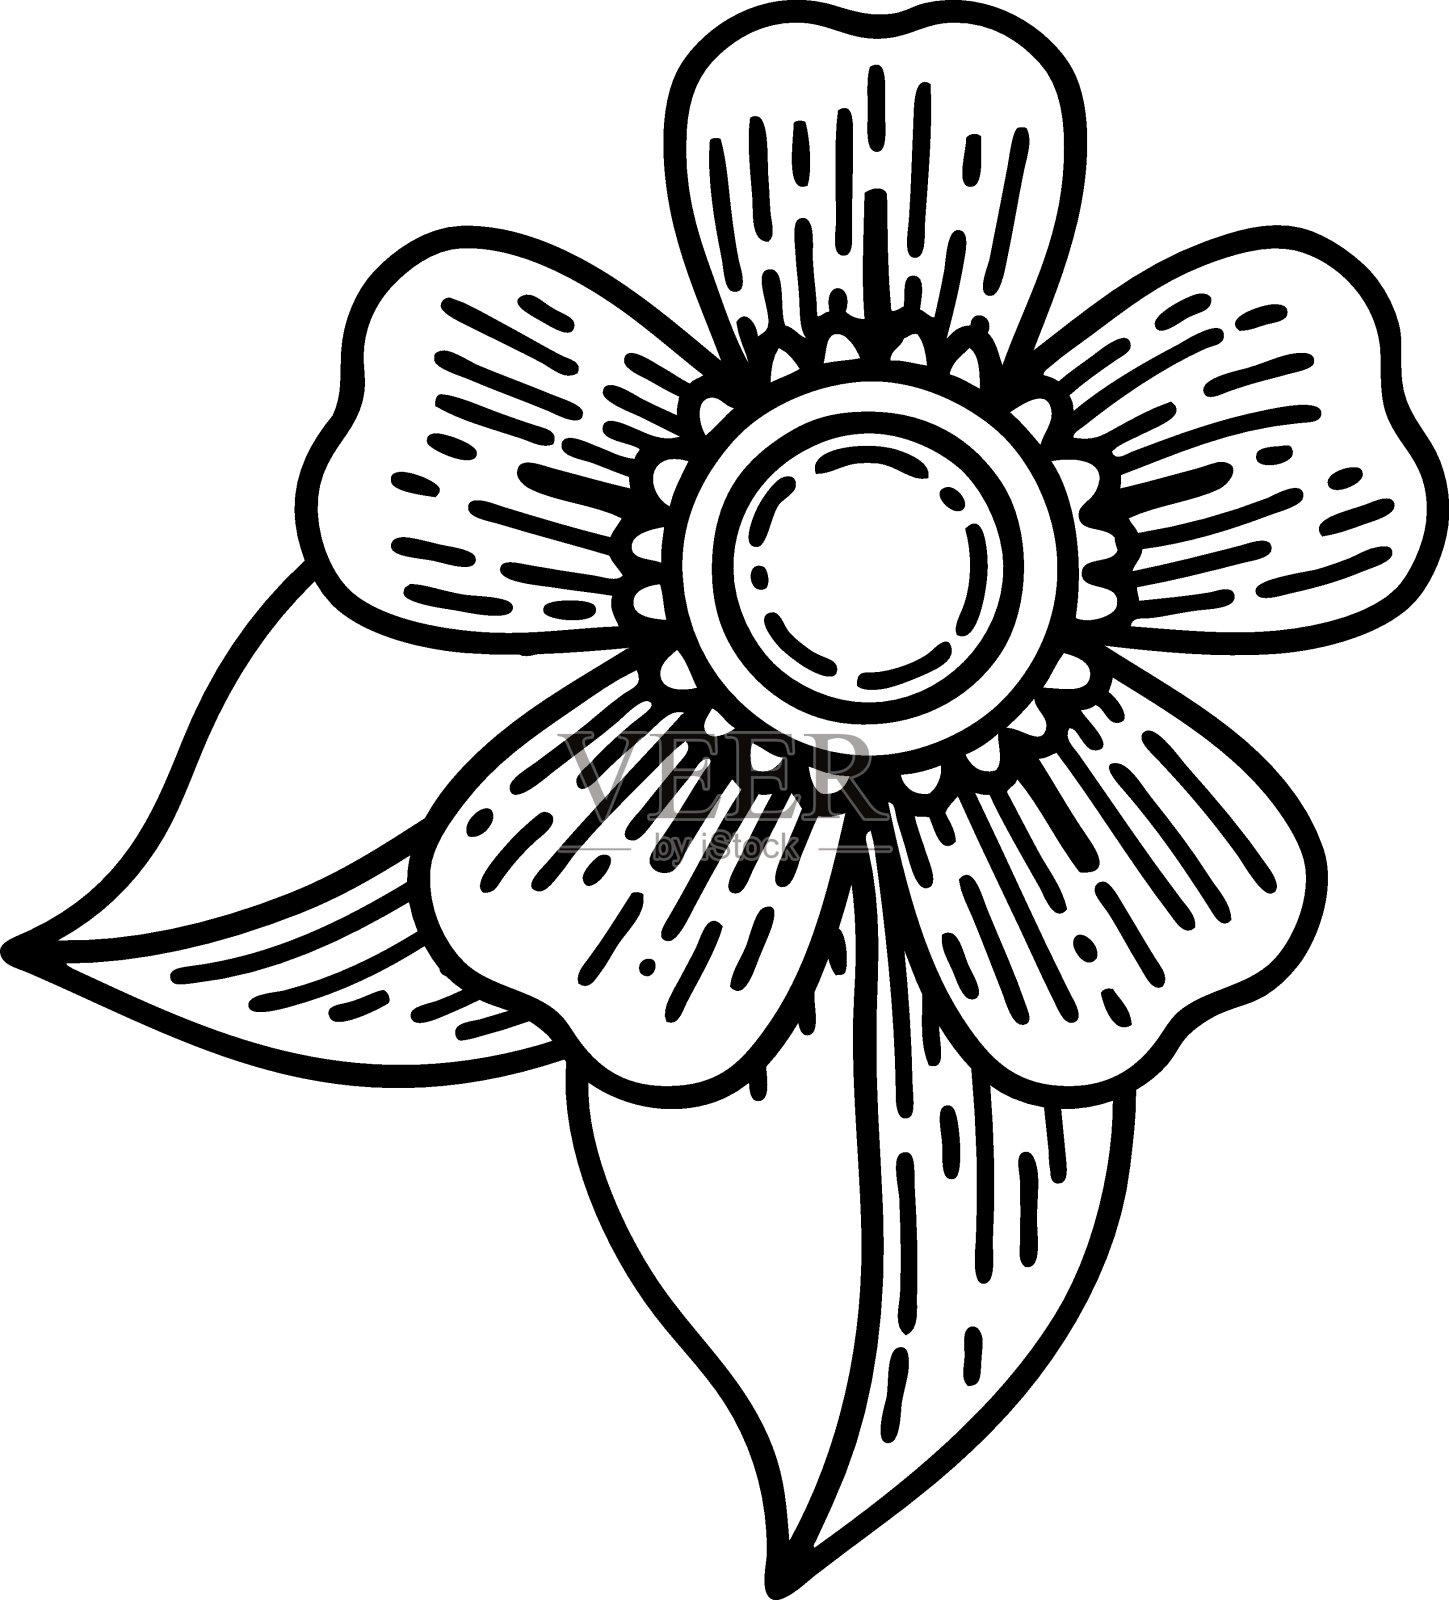 一朵花的黑线纹身设计元素图片